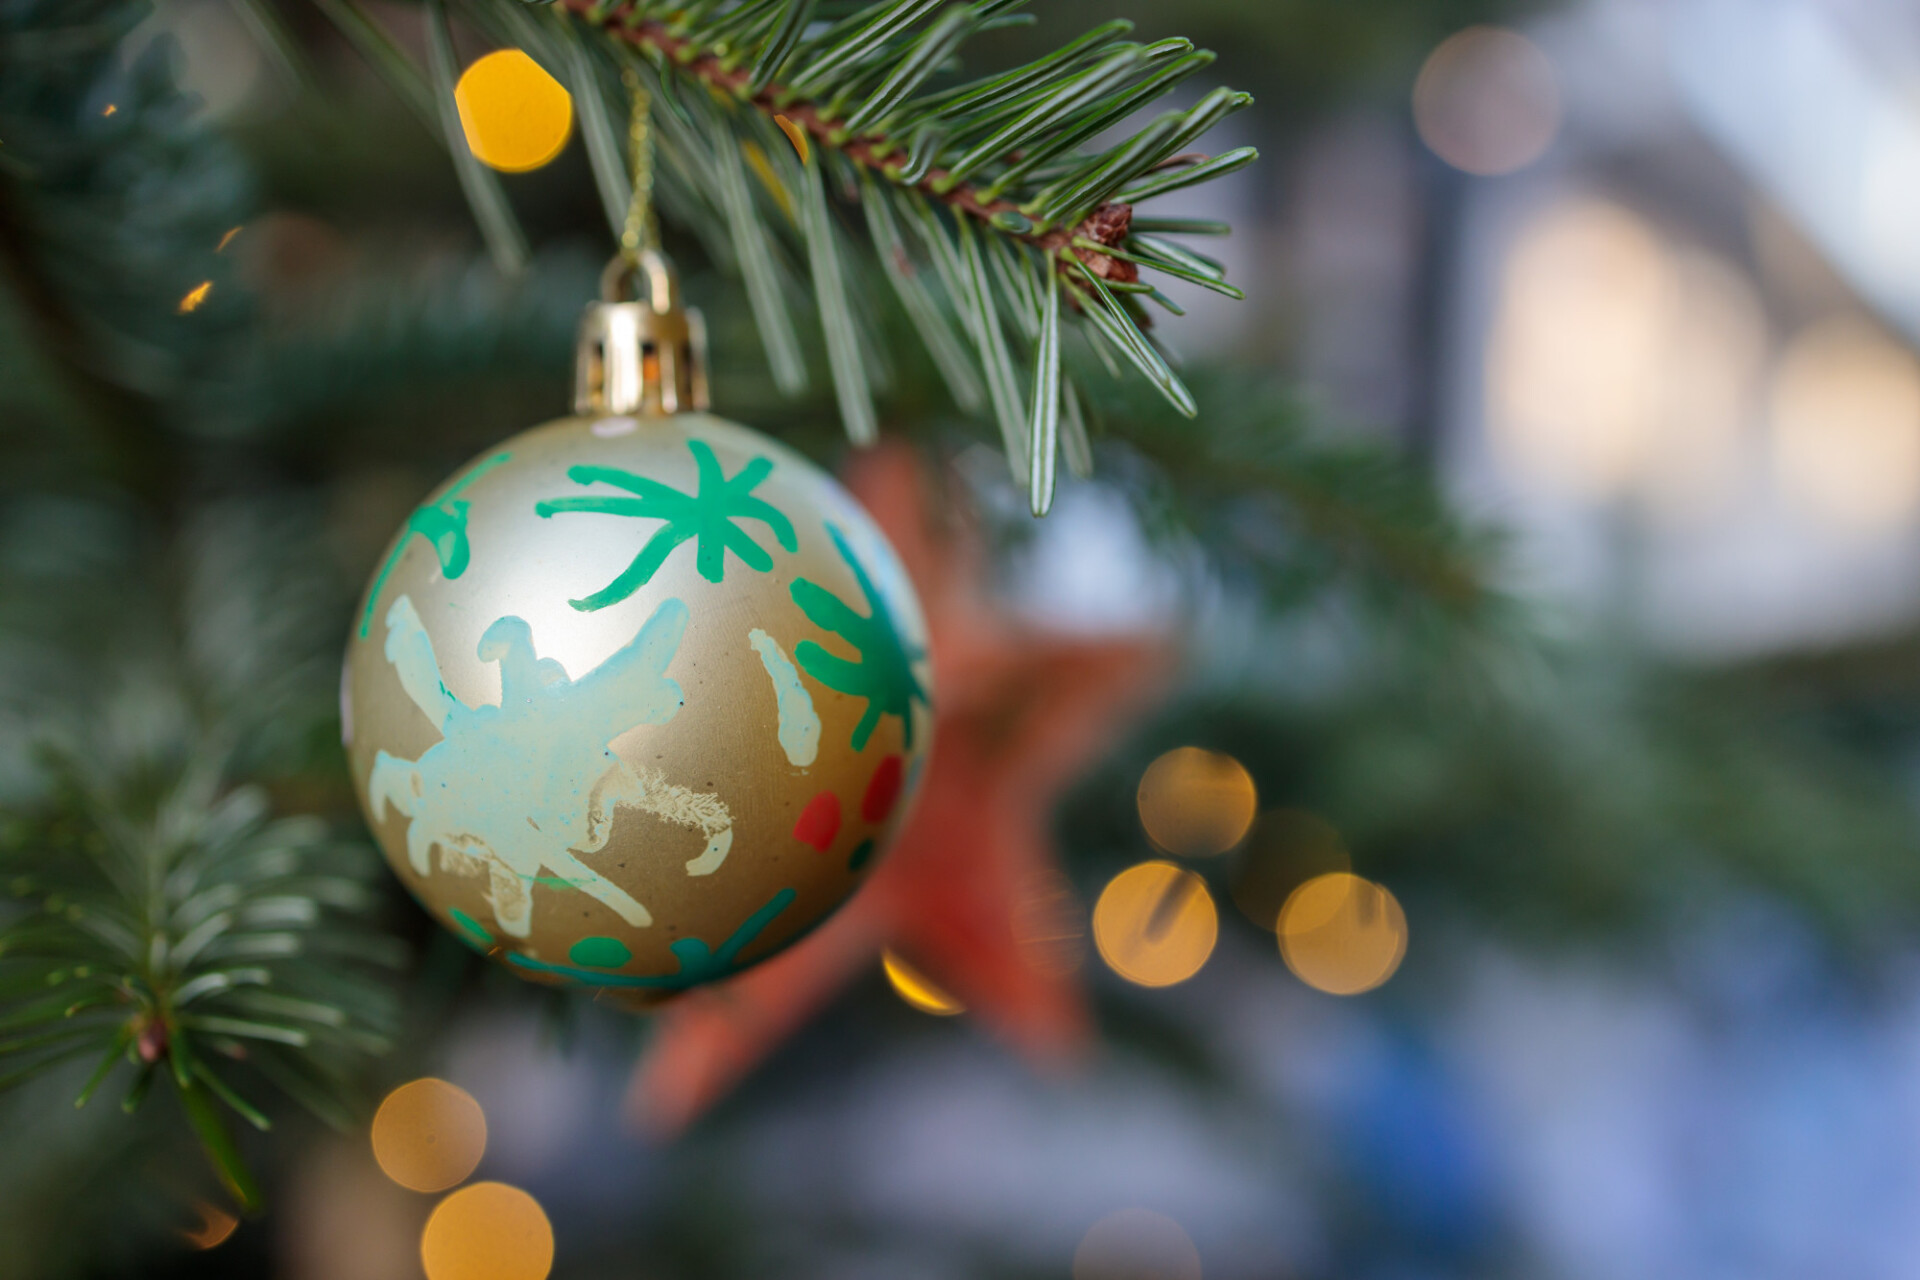 Christmas ball on Christmas tree